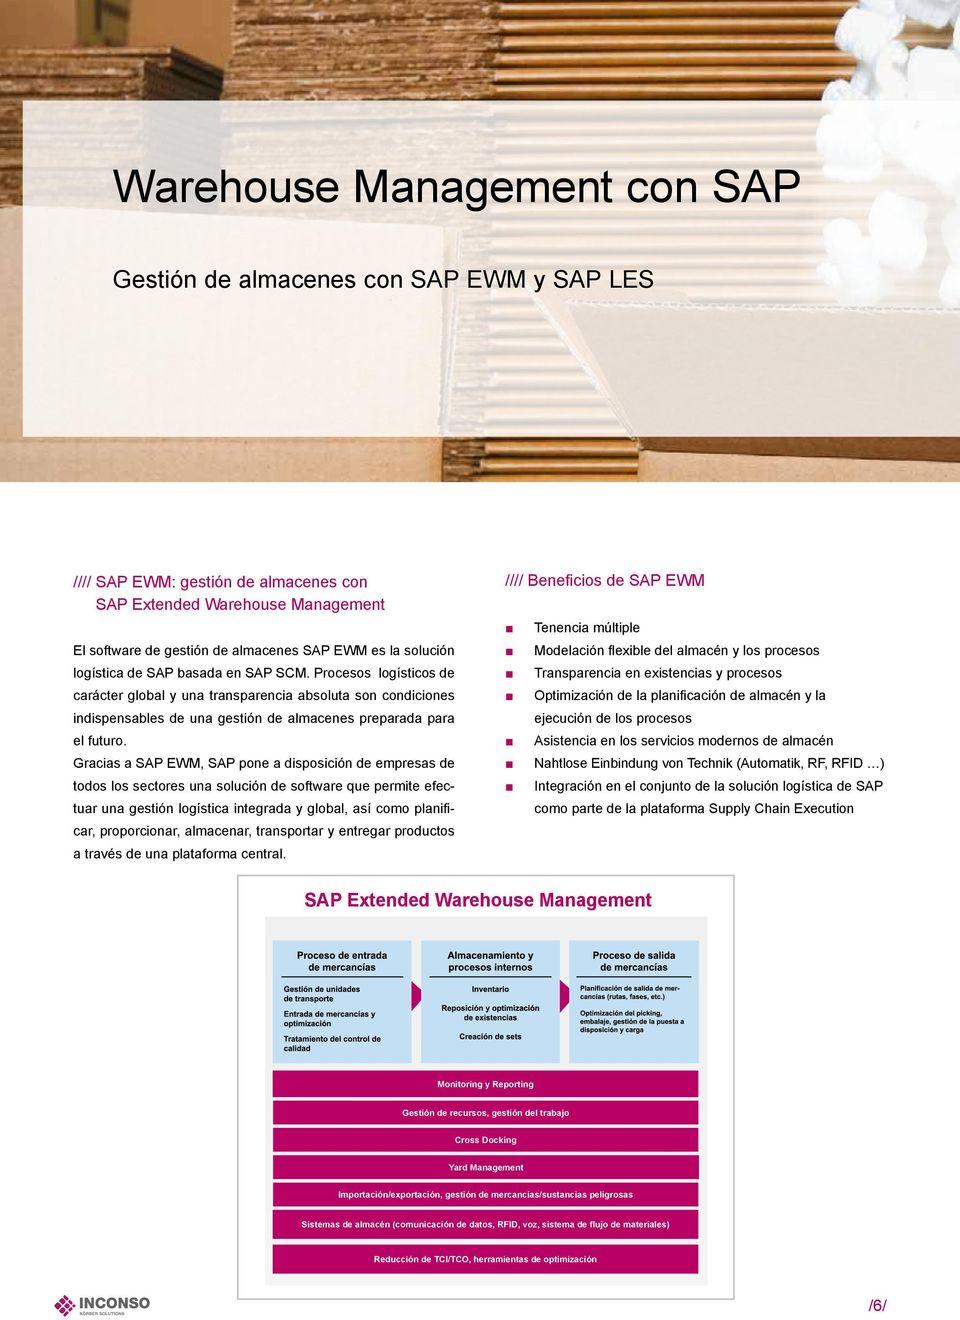 Gracias a SAP EWM, SAP pone a disposición de empresas de todos los sectores una solución de software que permite efectuar una gestión logística integrada y global, así como planificar, proporcionar,